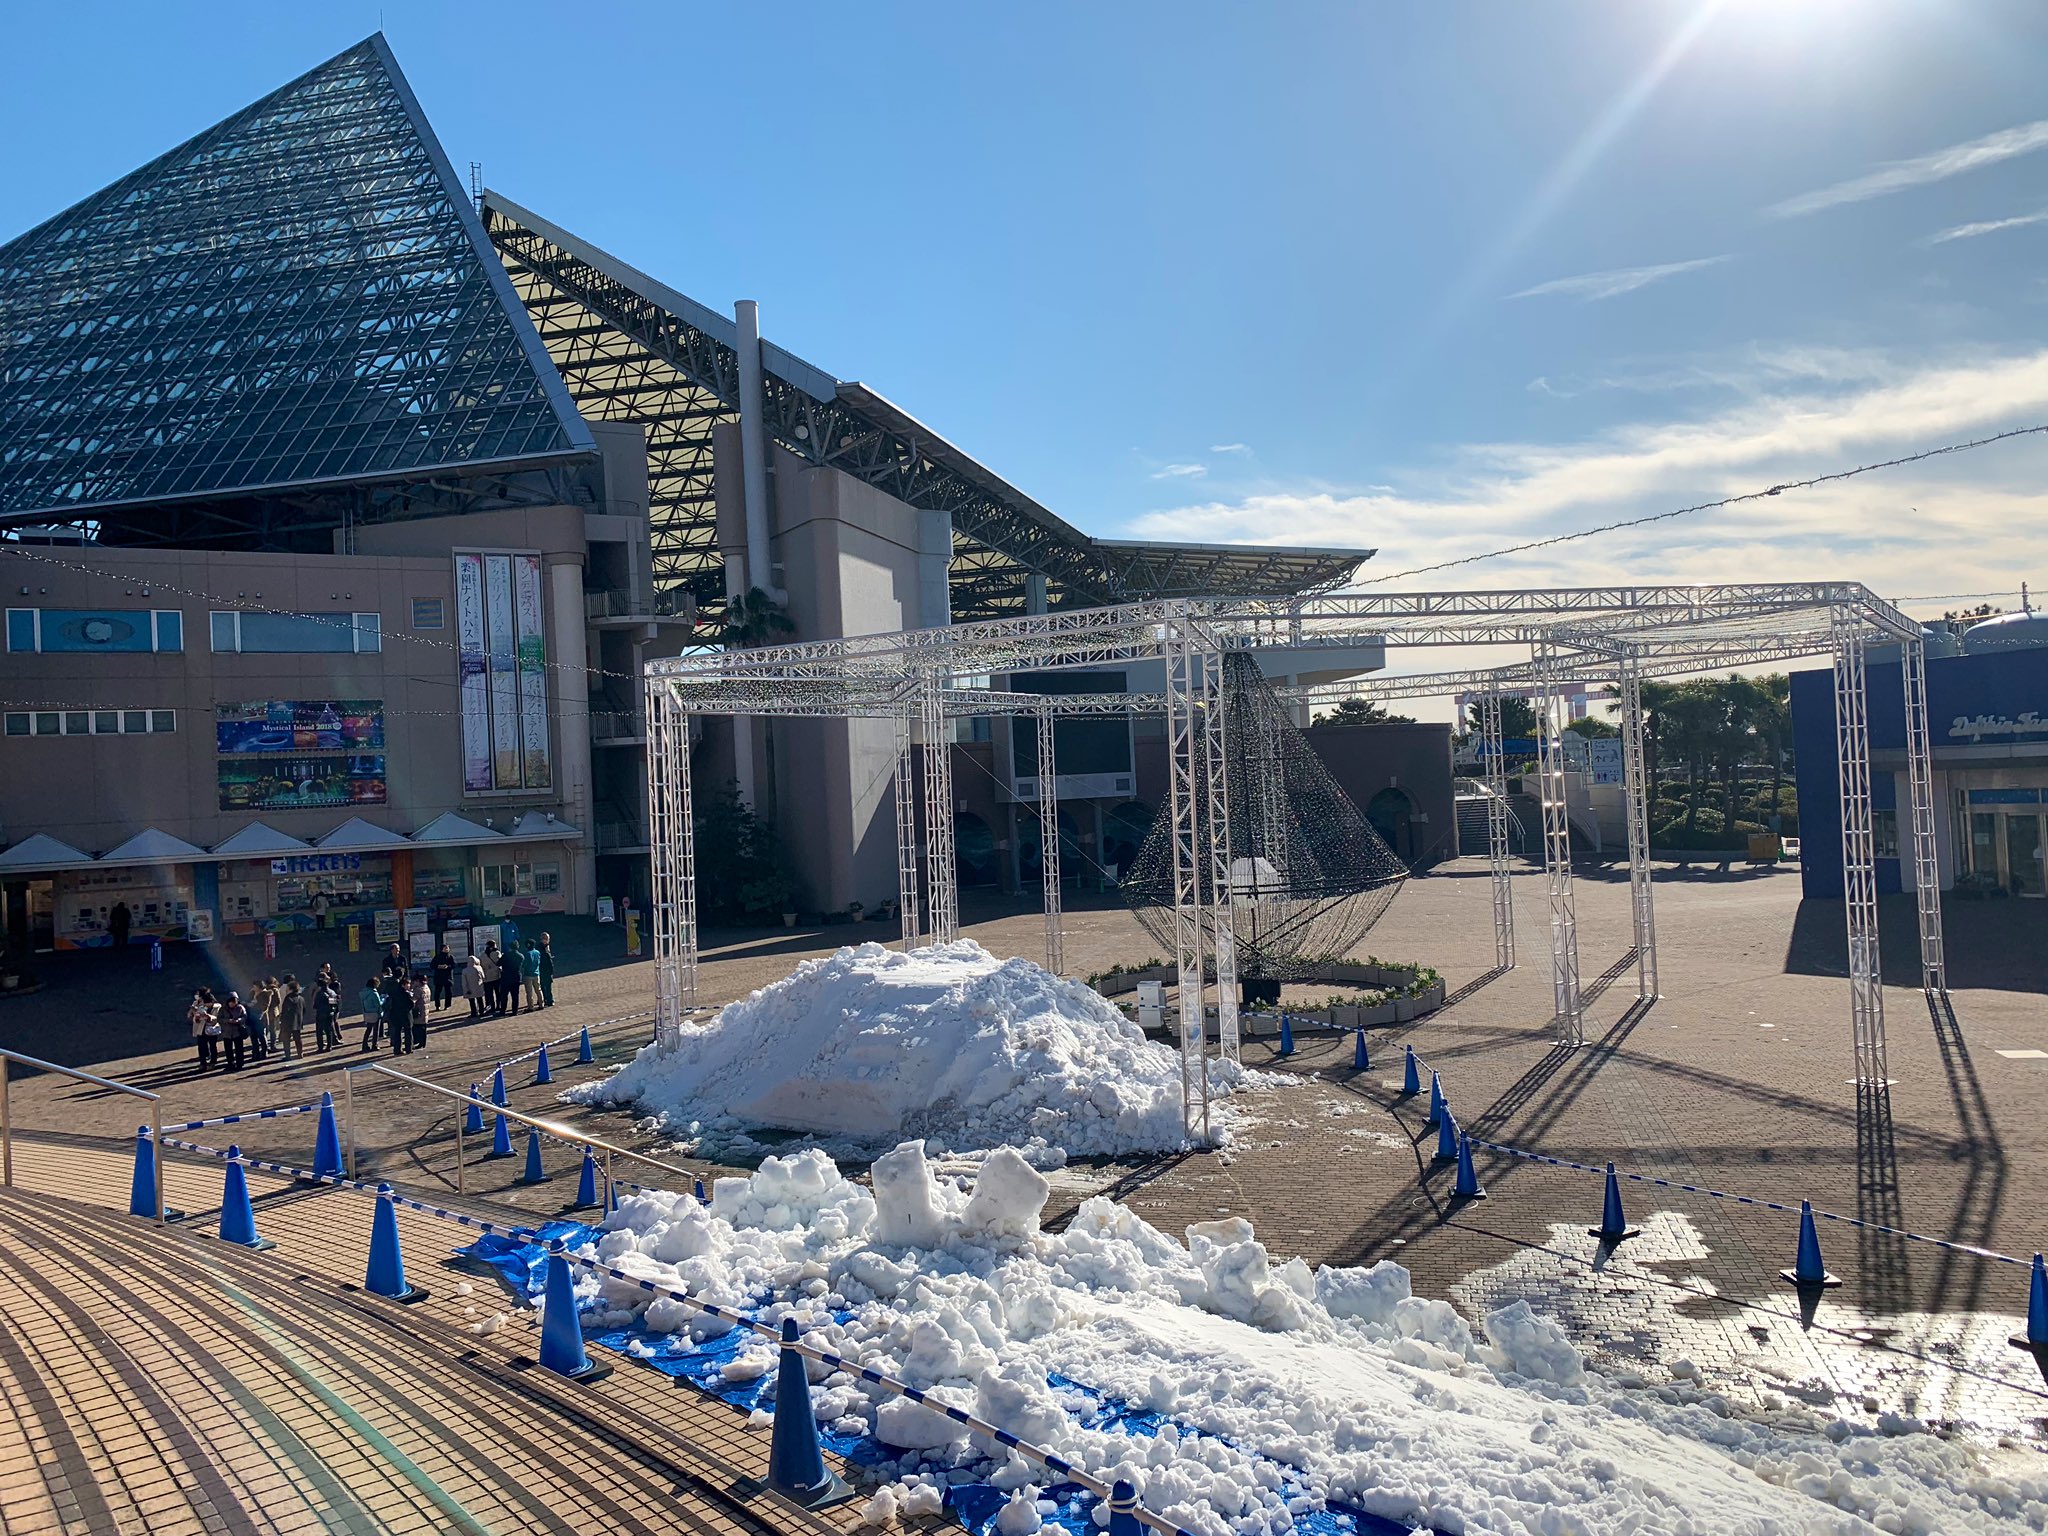 横浜 八景島シーパラダイス公式 アクアミュージアム前の広場に 秋田県横手市から50tの雪が運ばれてきました これから かまくら が作られます 明日には皆さまもお入りいただけますので どうぞお楽しみに シーパラ